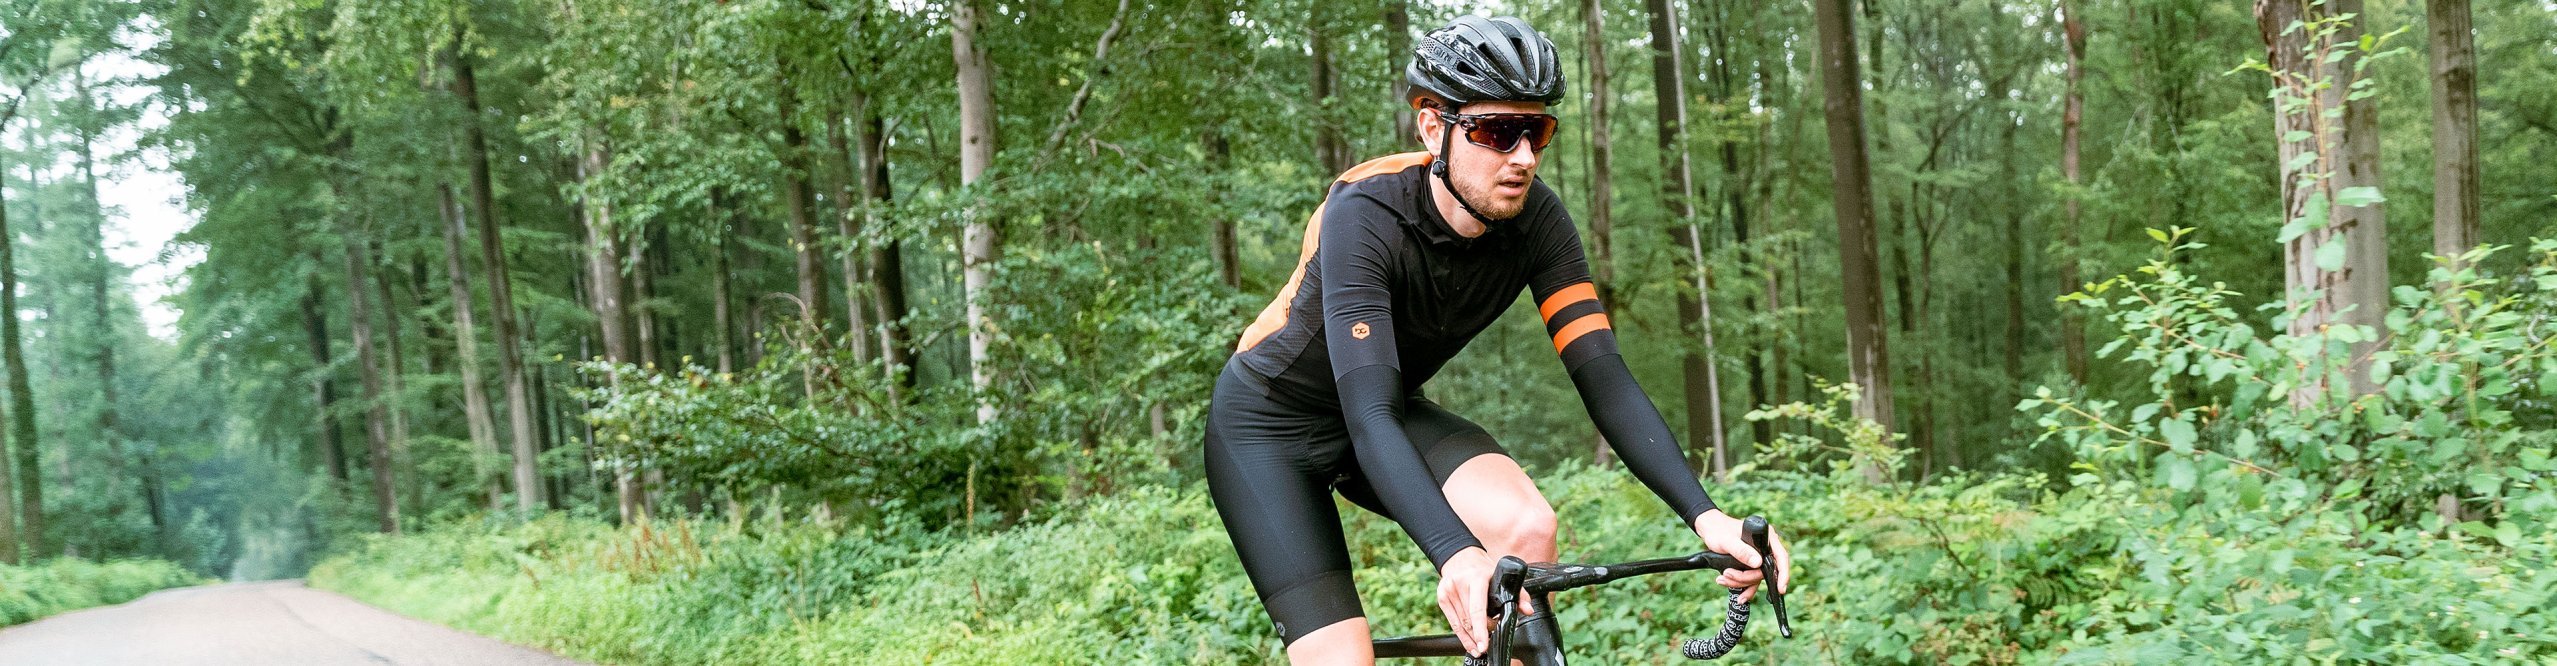 bc Rennradfahrer fährt im Wald mit Vibe Evo Lenker